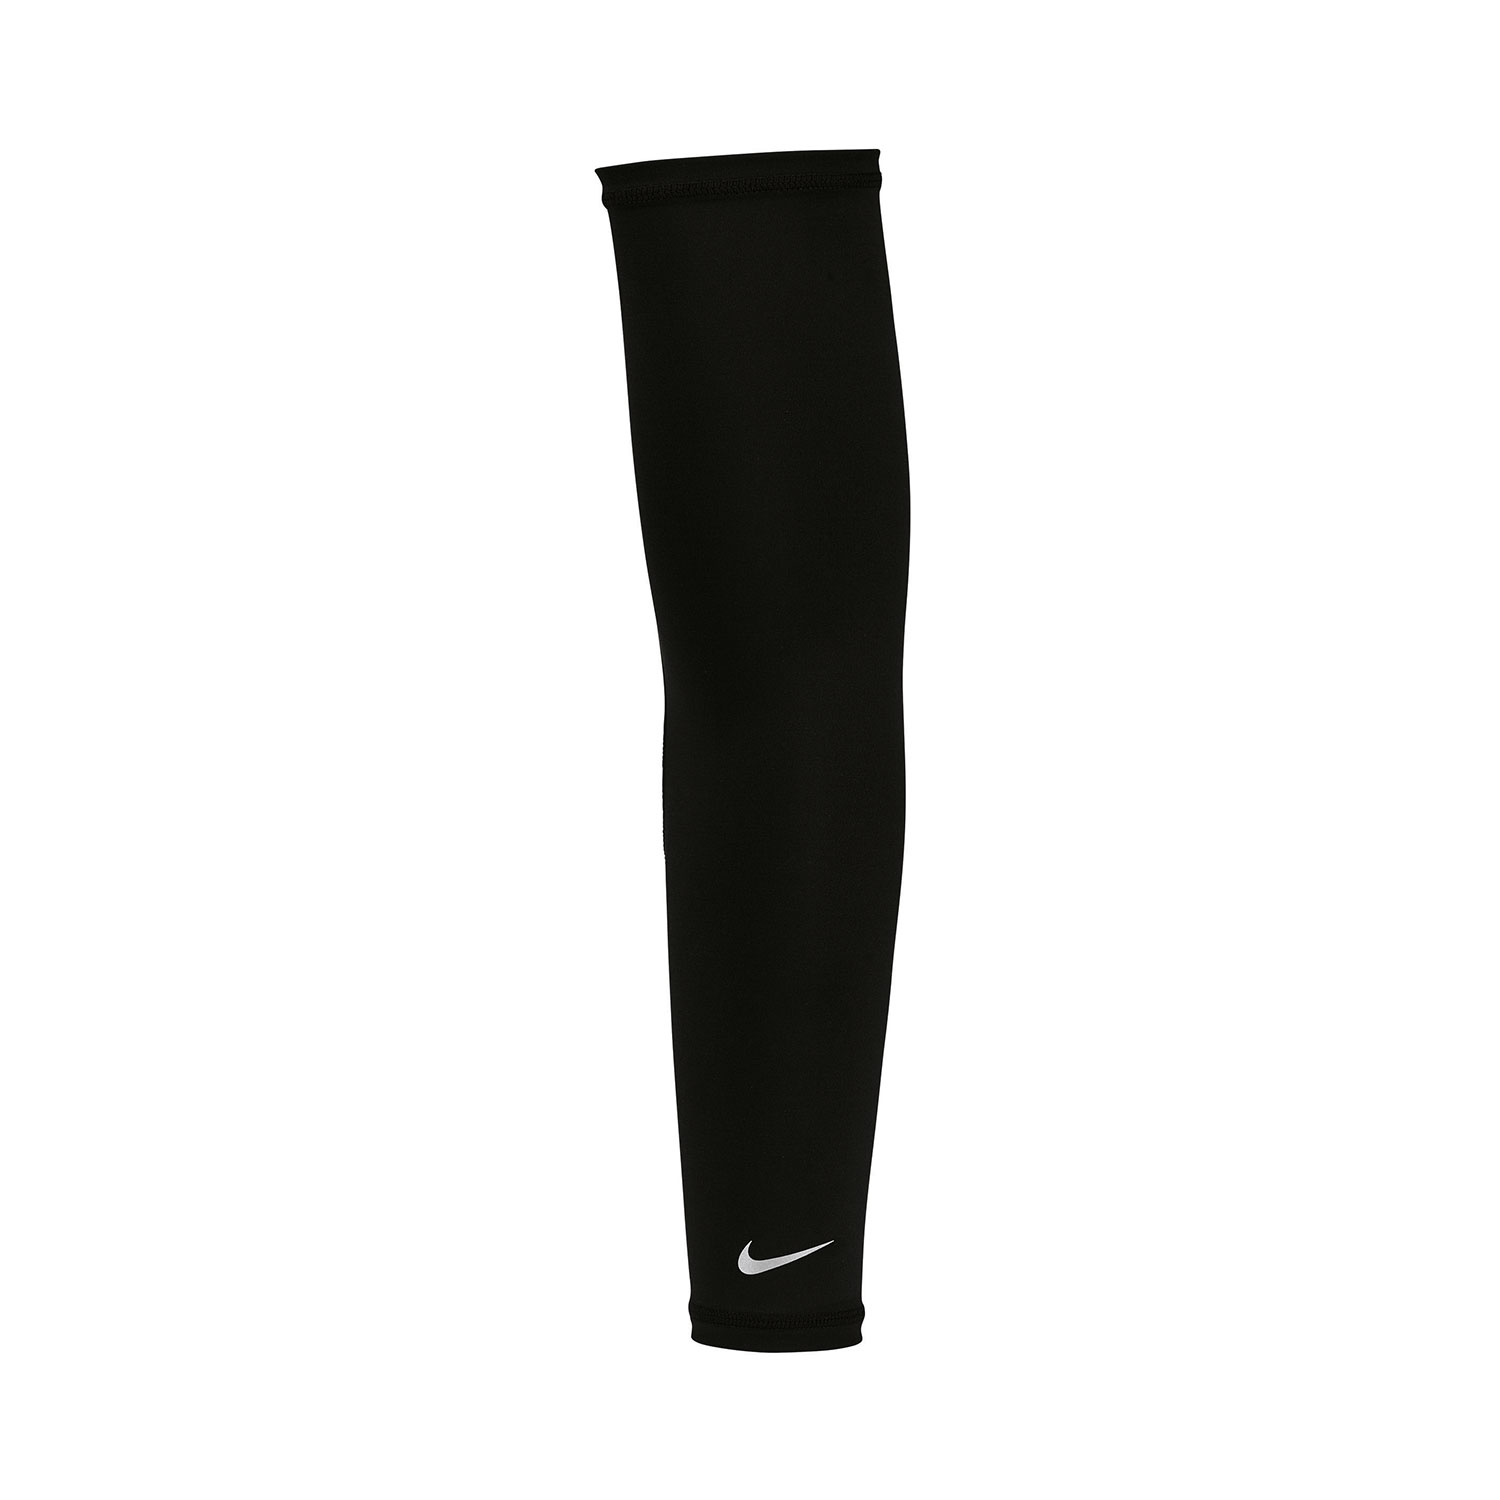 Nike Dri-FIT UV Sleeves - Black/Silver